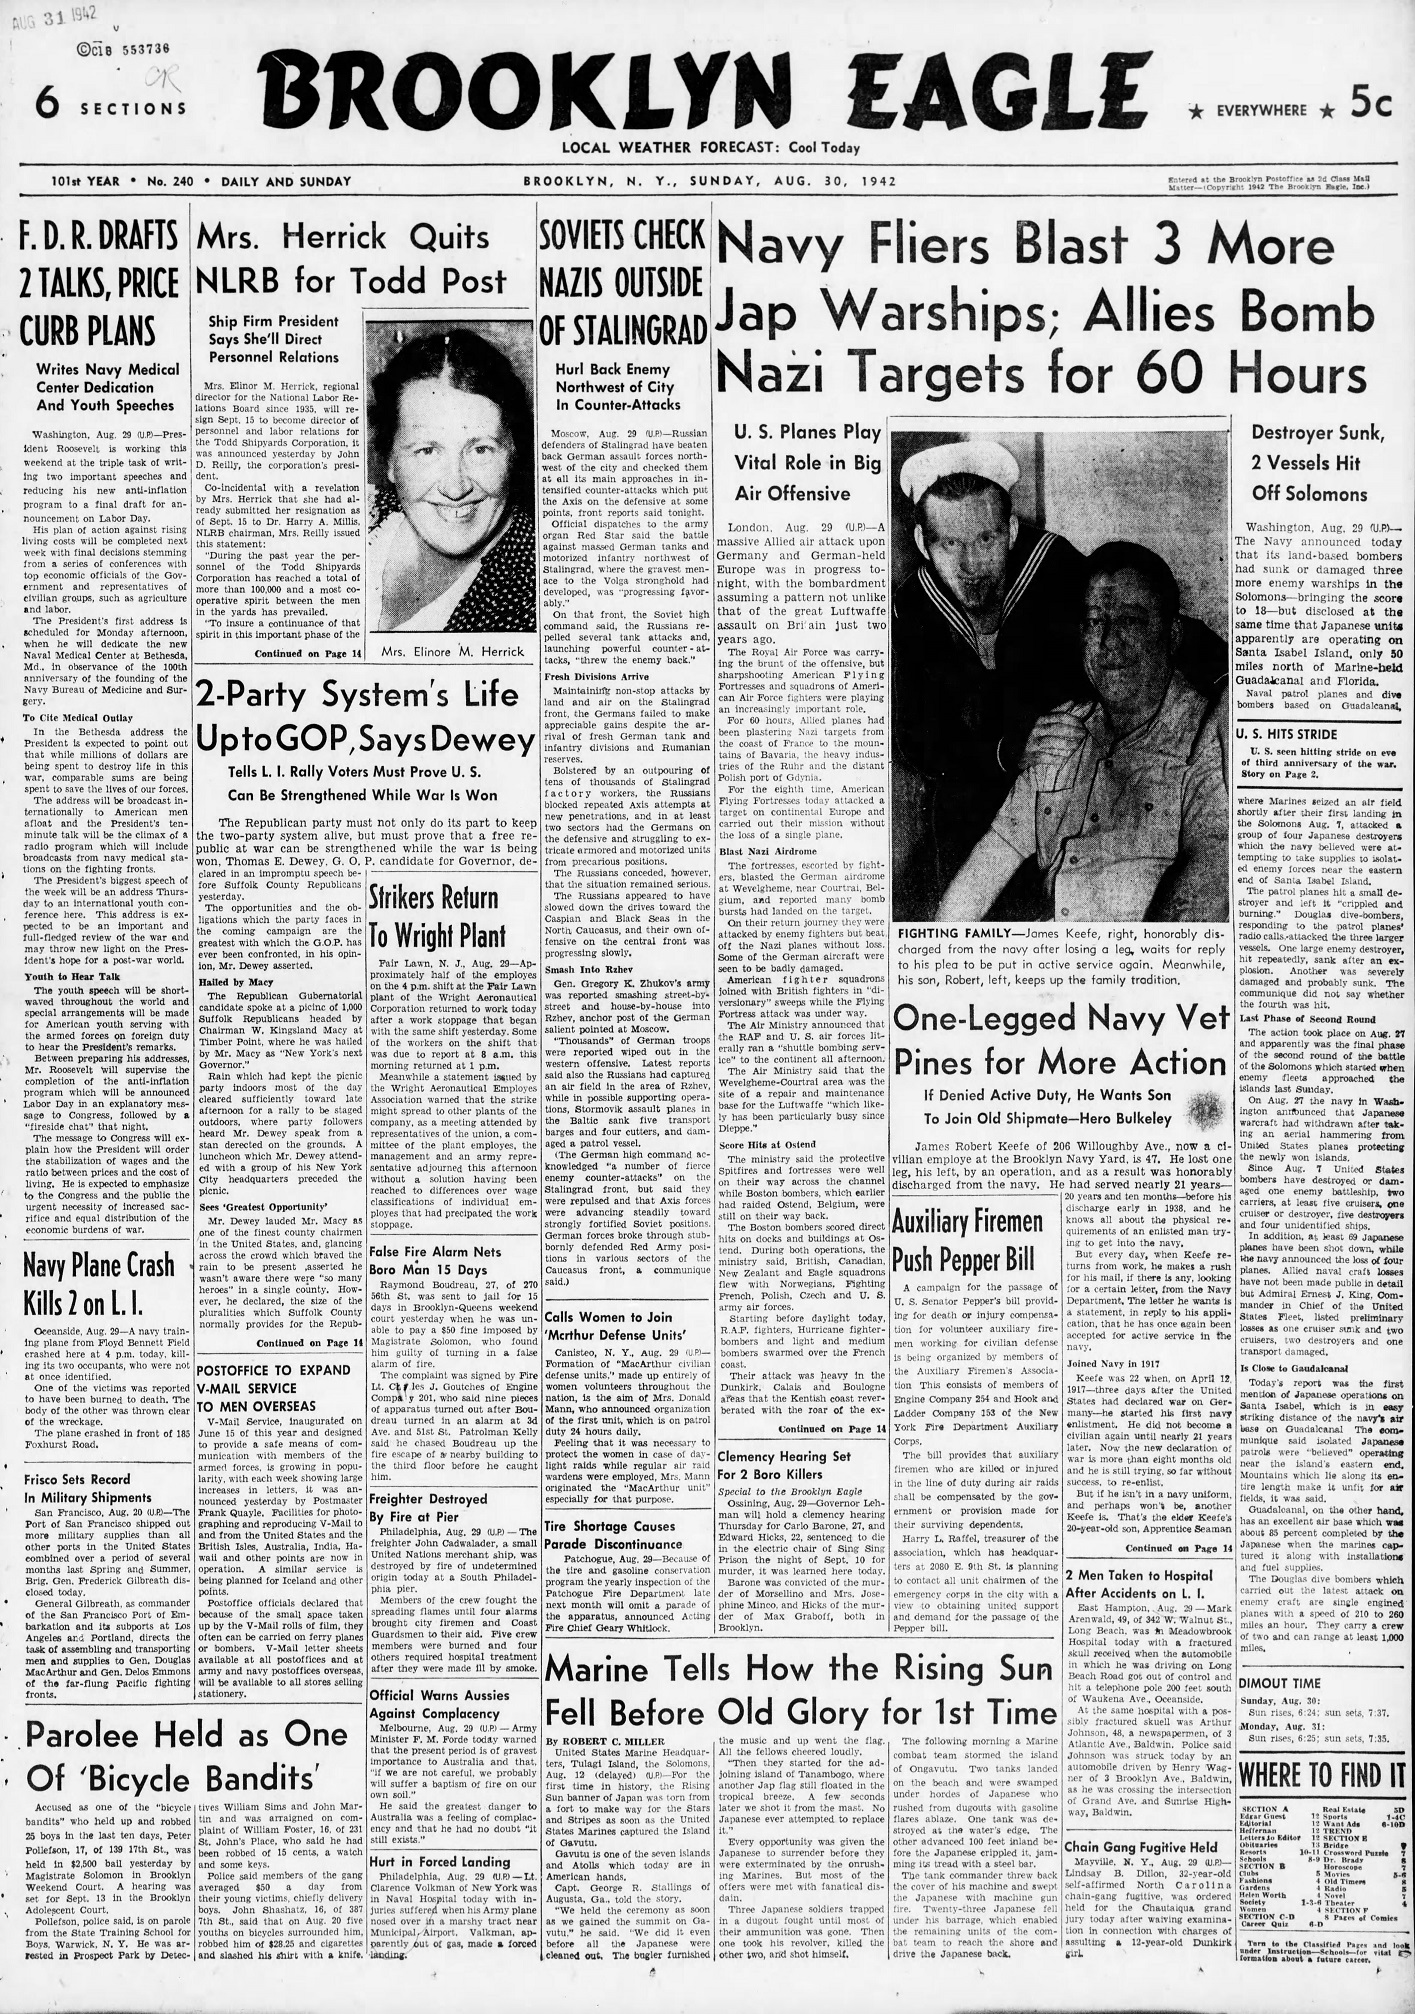 The_Brooklyn_Daily_Eagle_Sun__Aug_30__1942_.jpg